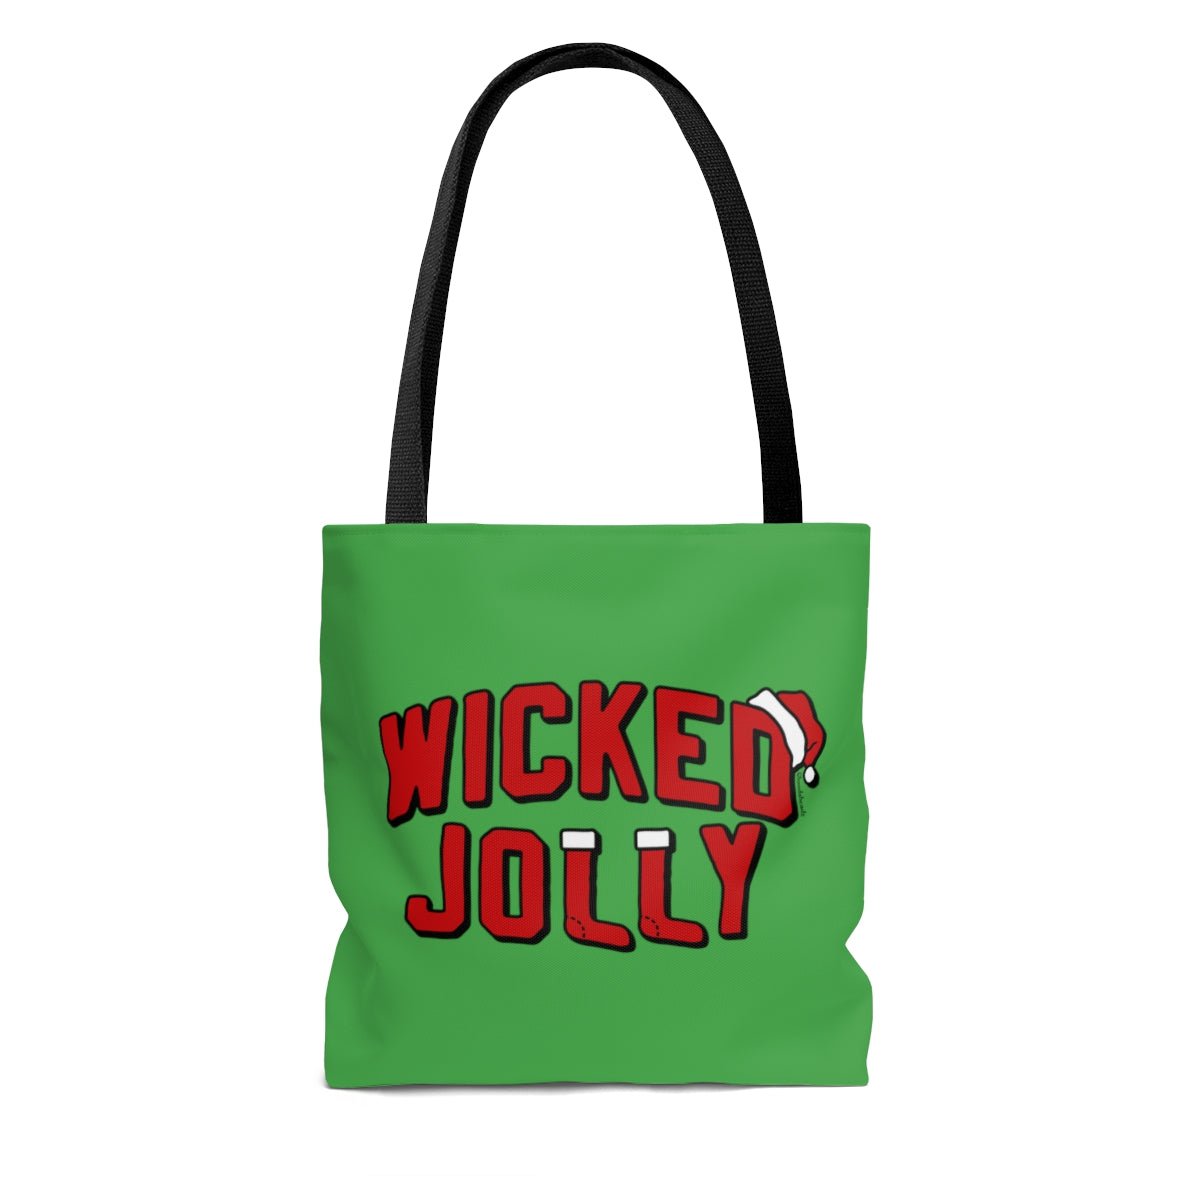 Wicked Jolly Tote Bag - Chowdaheadz